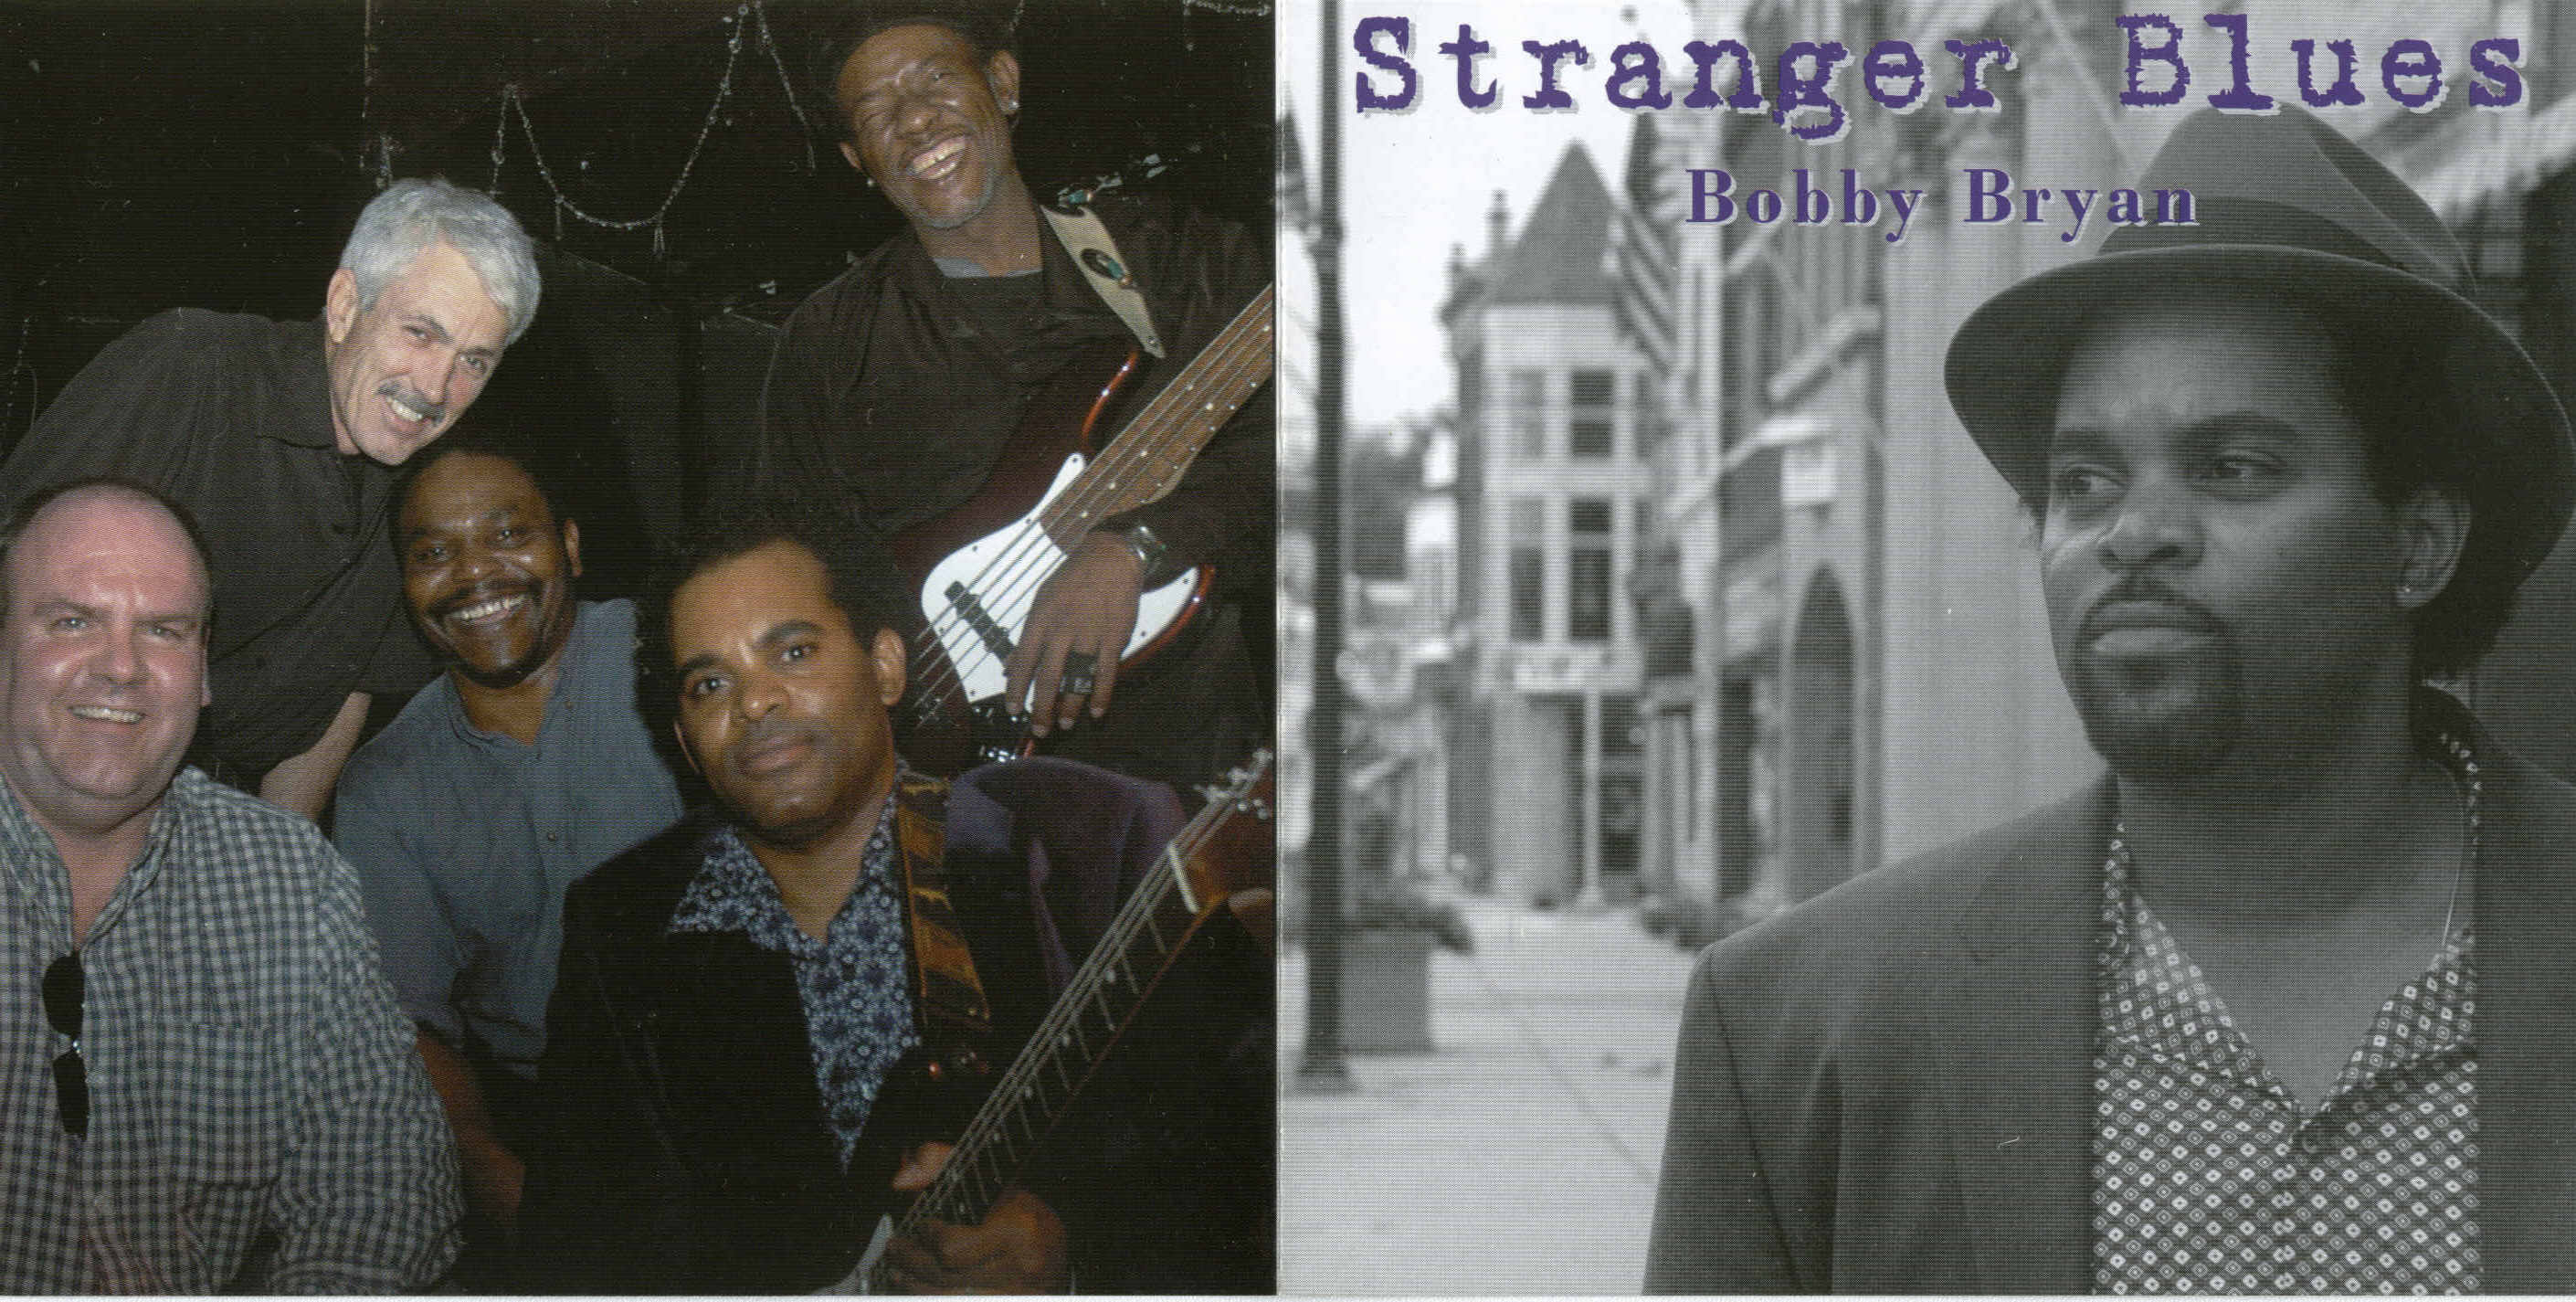 Bobby Bryan - Stranger Blues